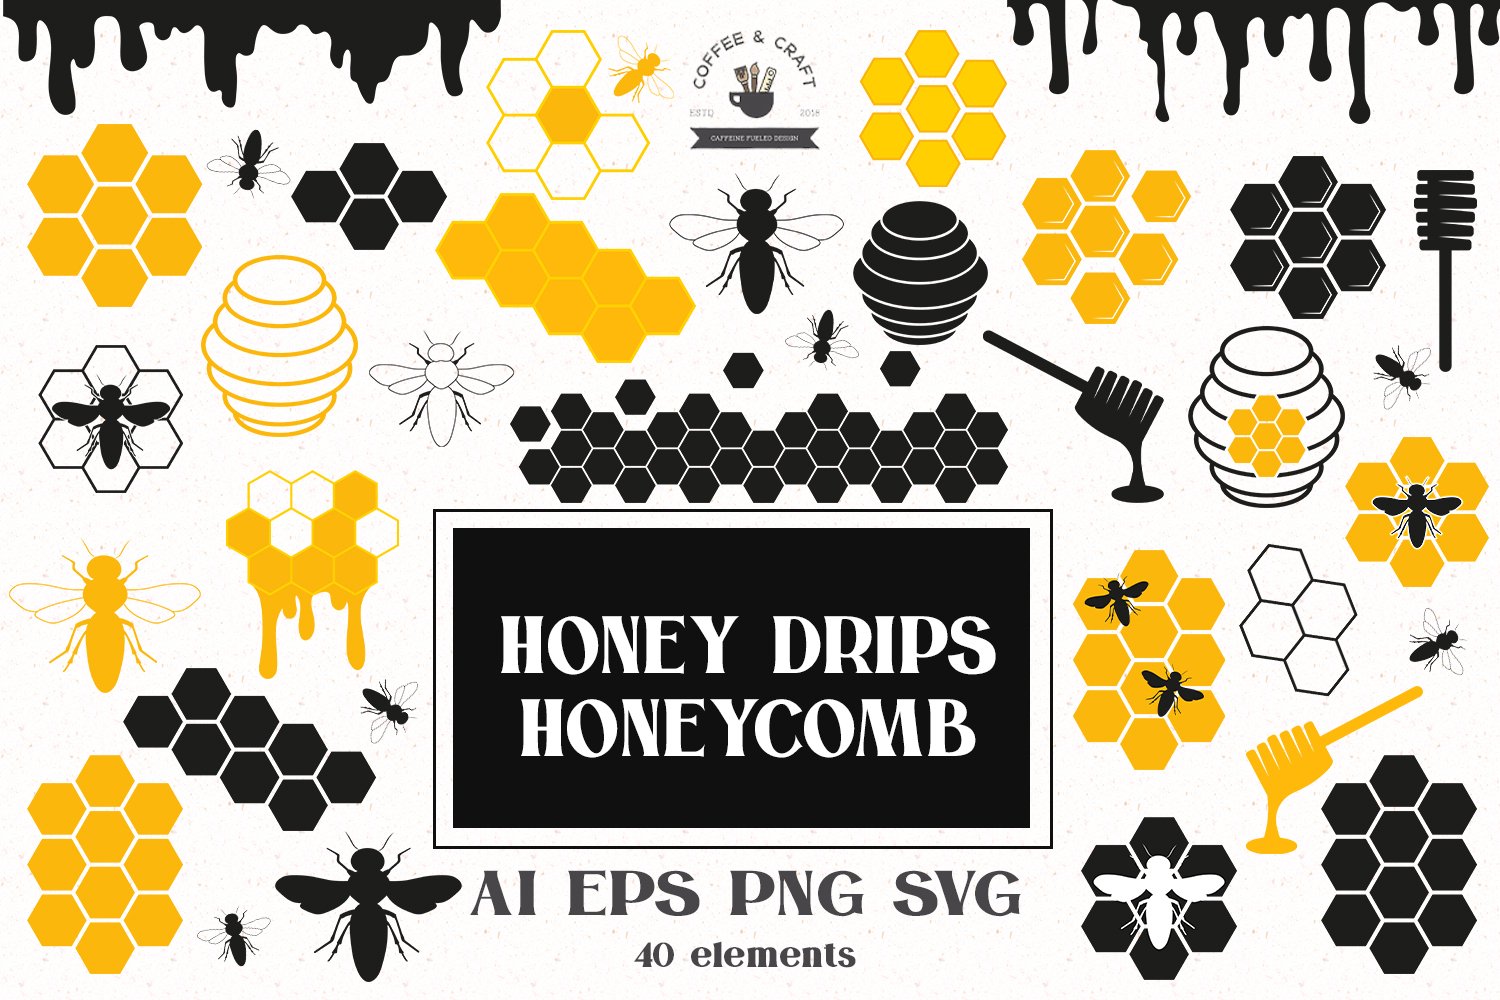 Stylish honeycomb set.